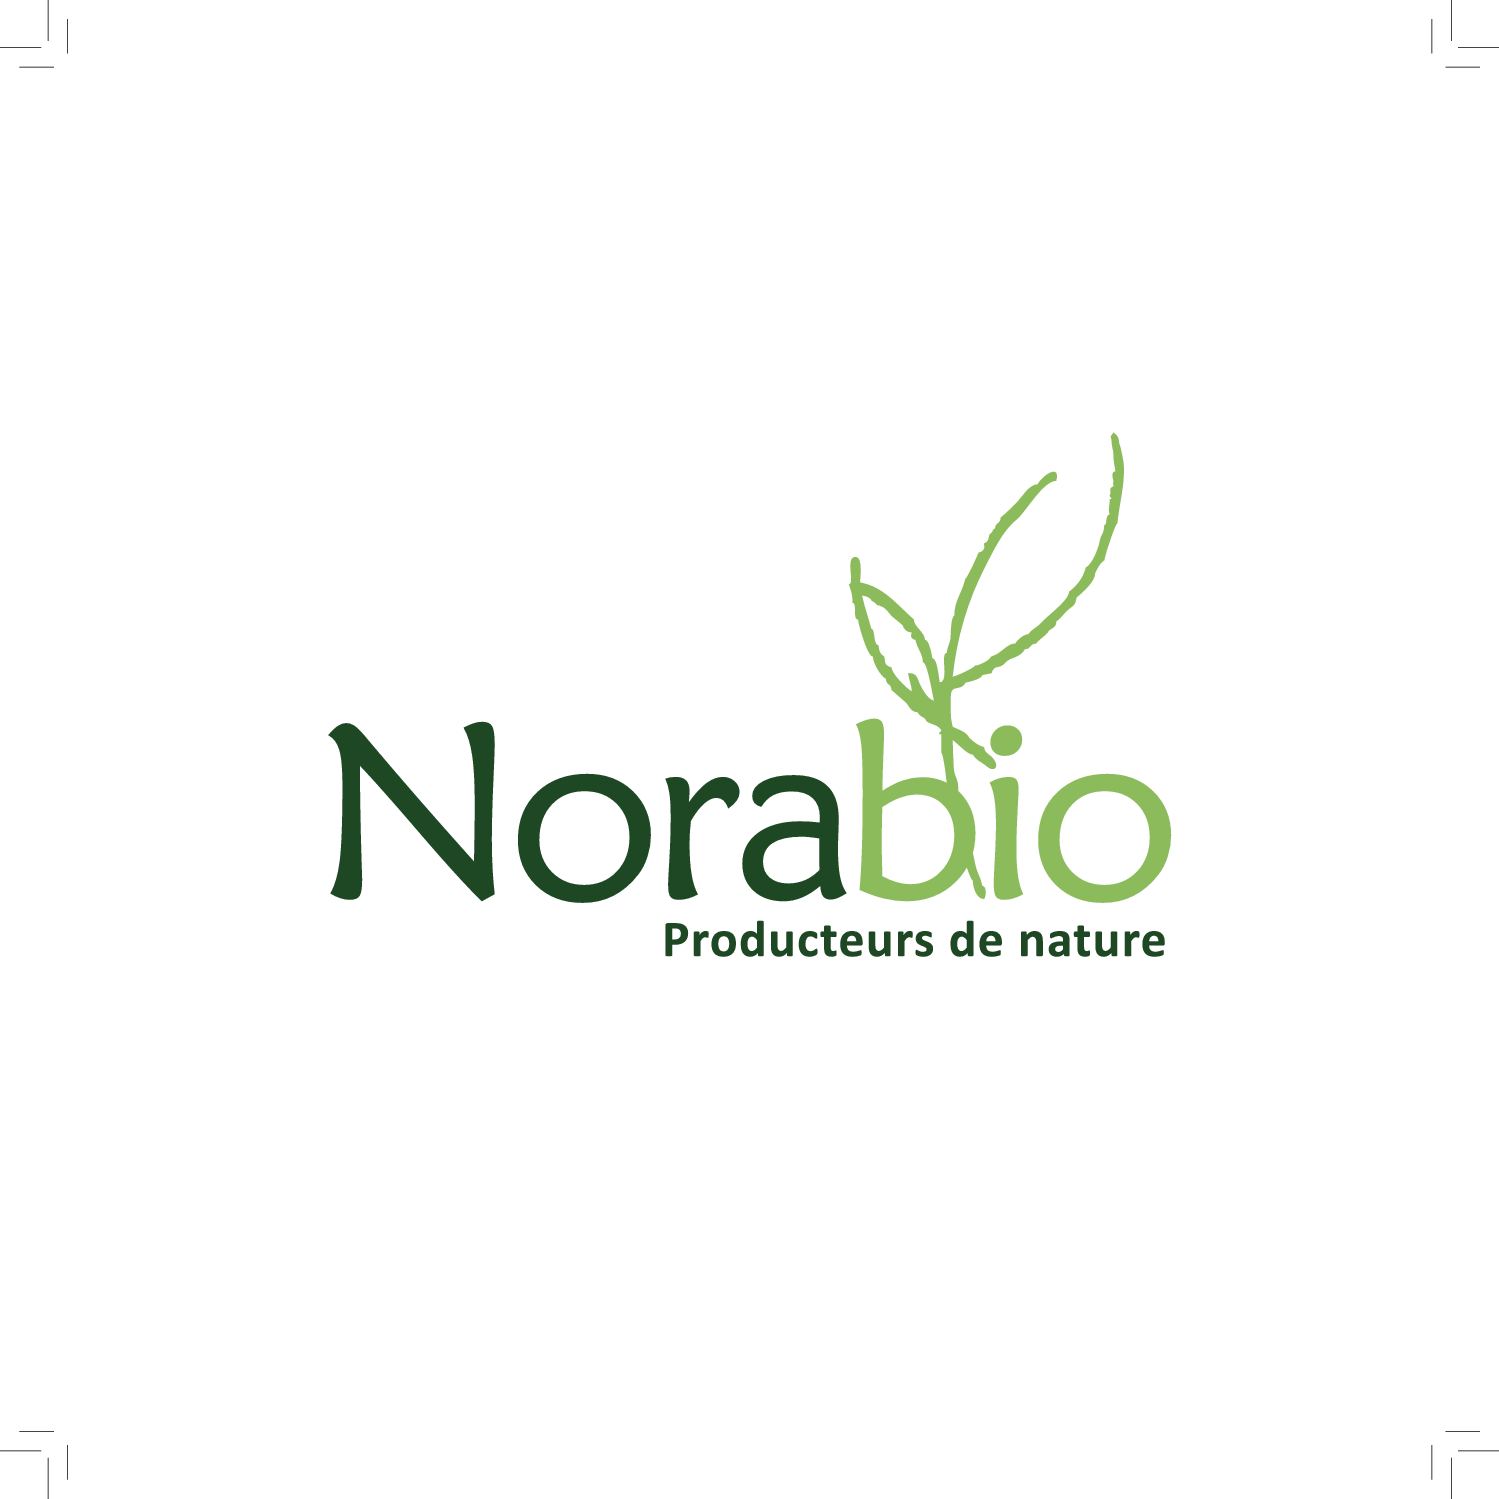 Norabio